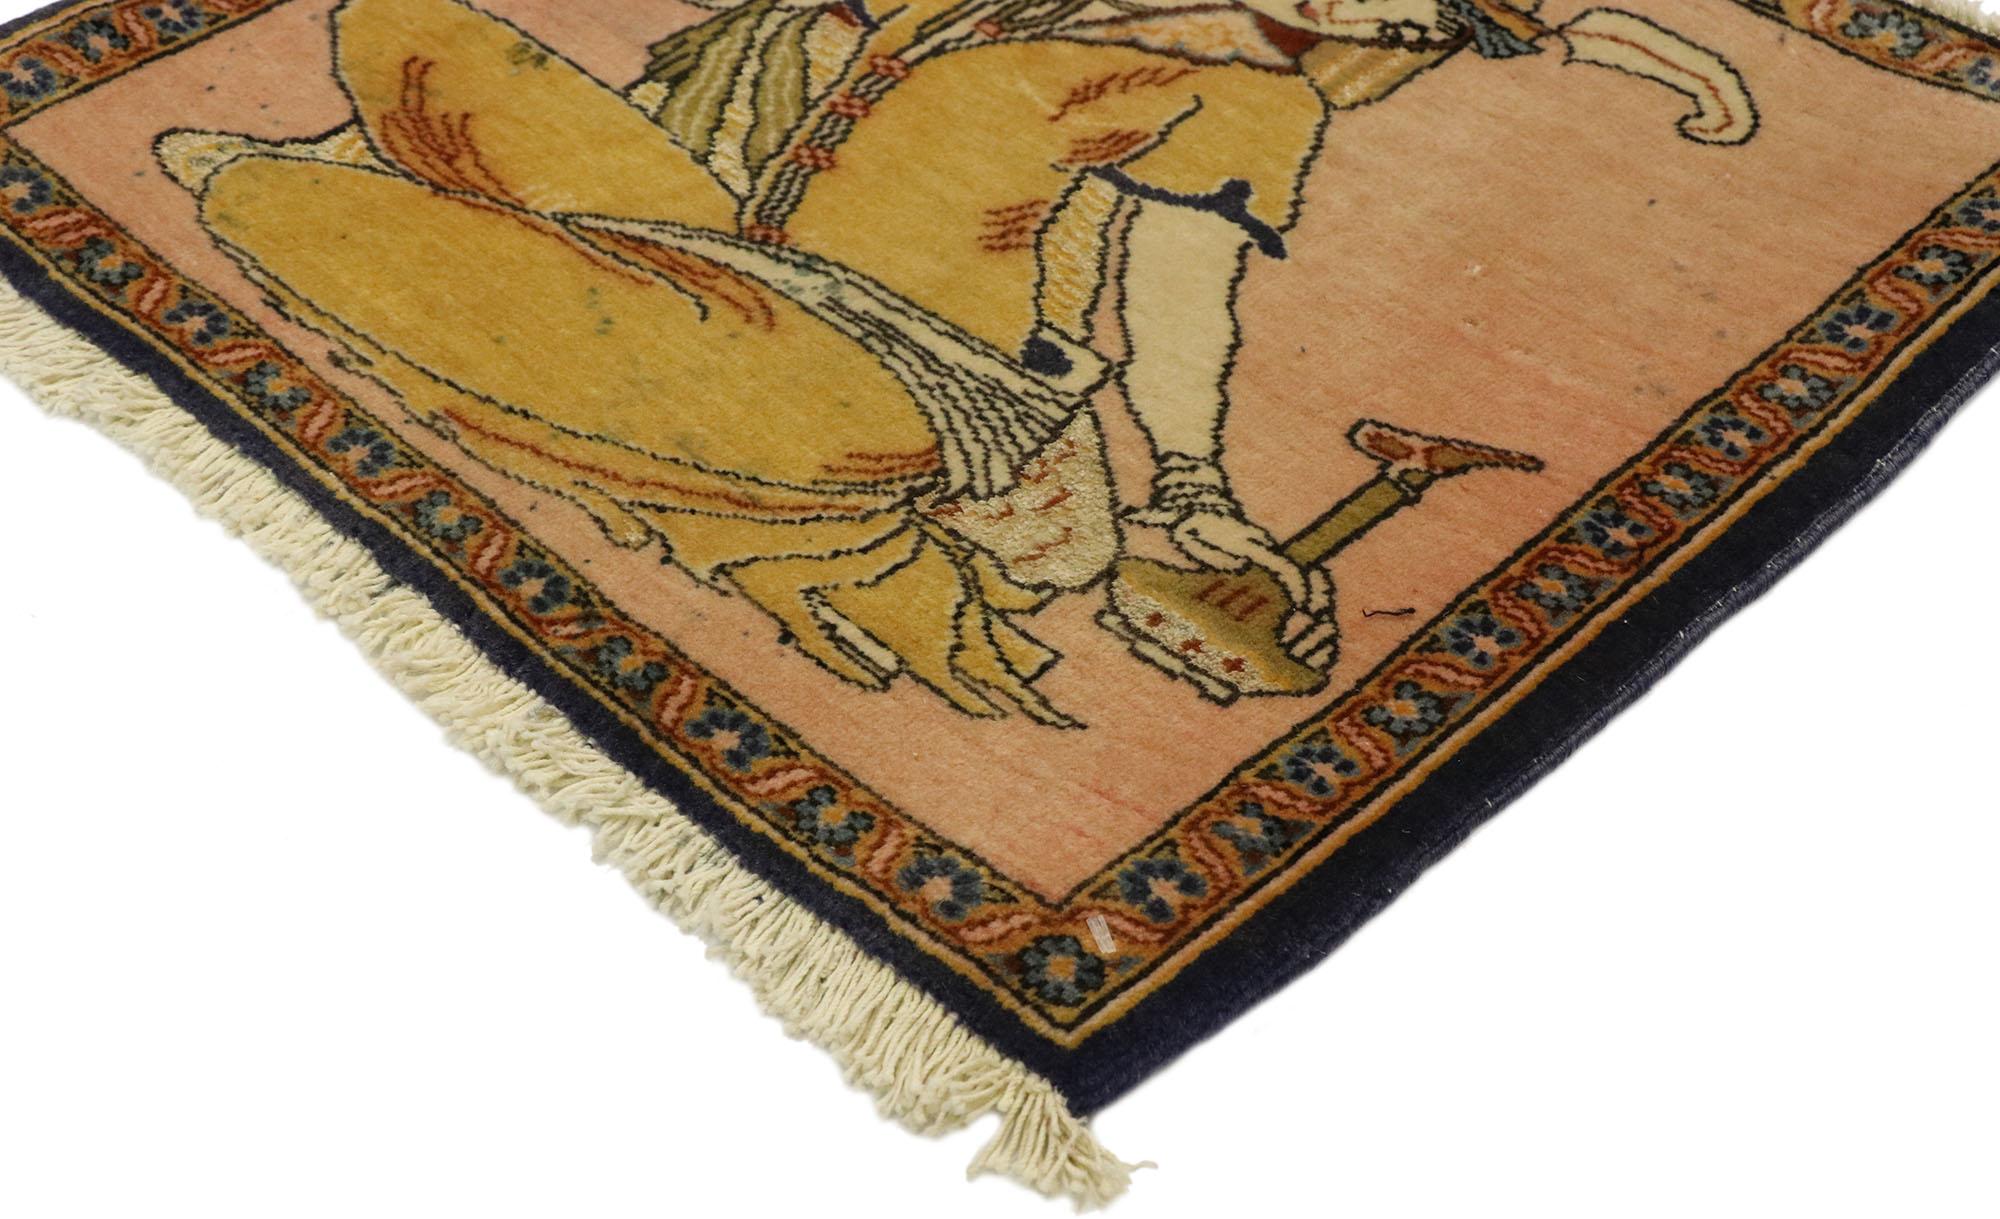 76197, tapis vintage persan Khamseh Pictorial avec scène de derviches, tenture murale perse. La Perse antique est la véritable origine de la viticulture et de la consommation de vin, comme le montre ce tapis pictural Khamseh en laine noué à la main.